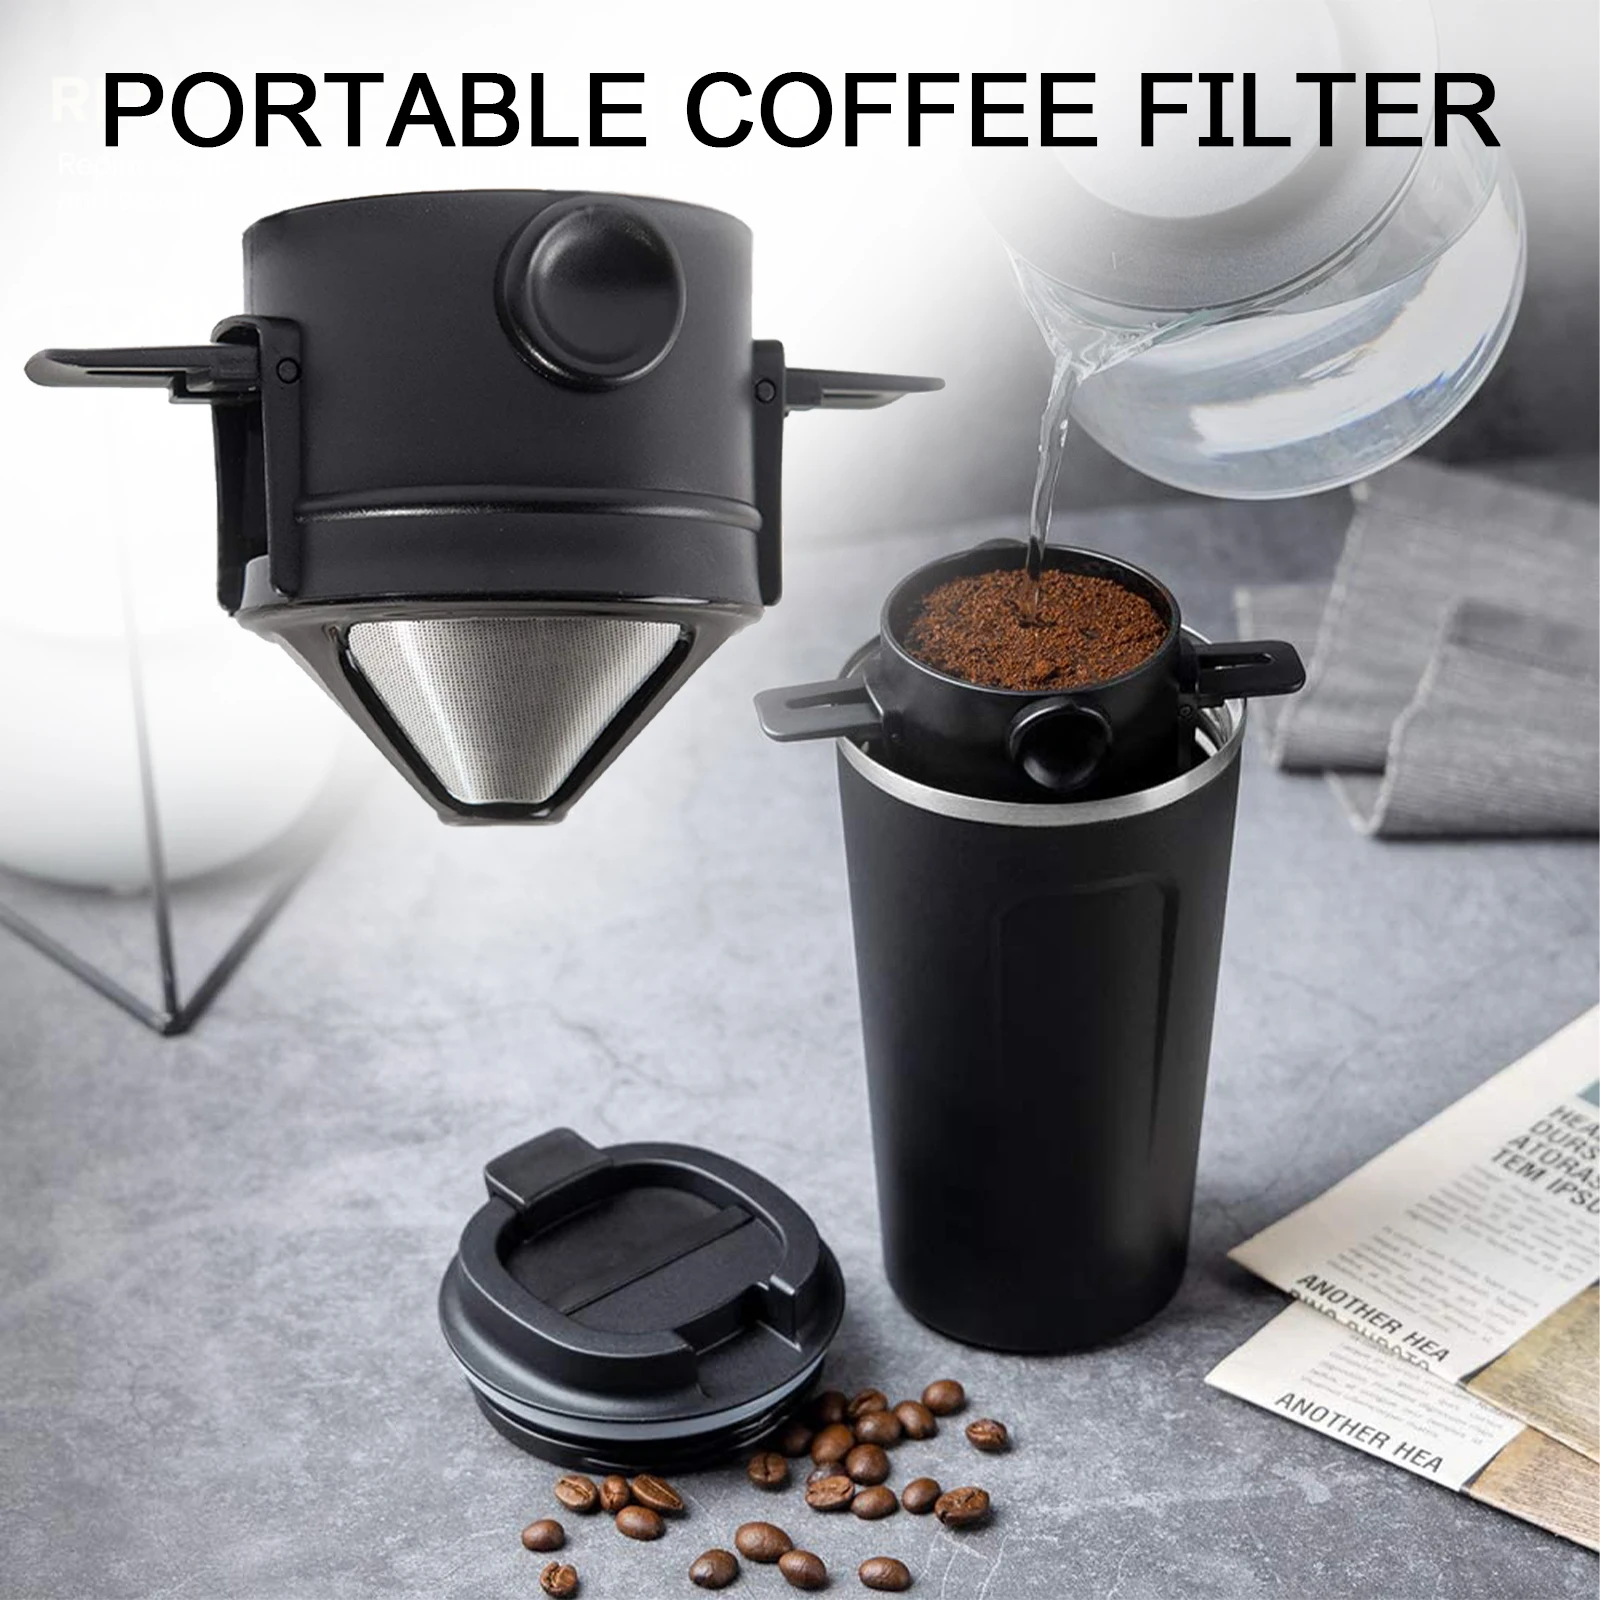 

Многоразовый фильтр для кофе, портативный держатель из нержавеющей стали 304 для кофе и чая, воронка, корзины, ситечко для чая и подставка, кап...